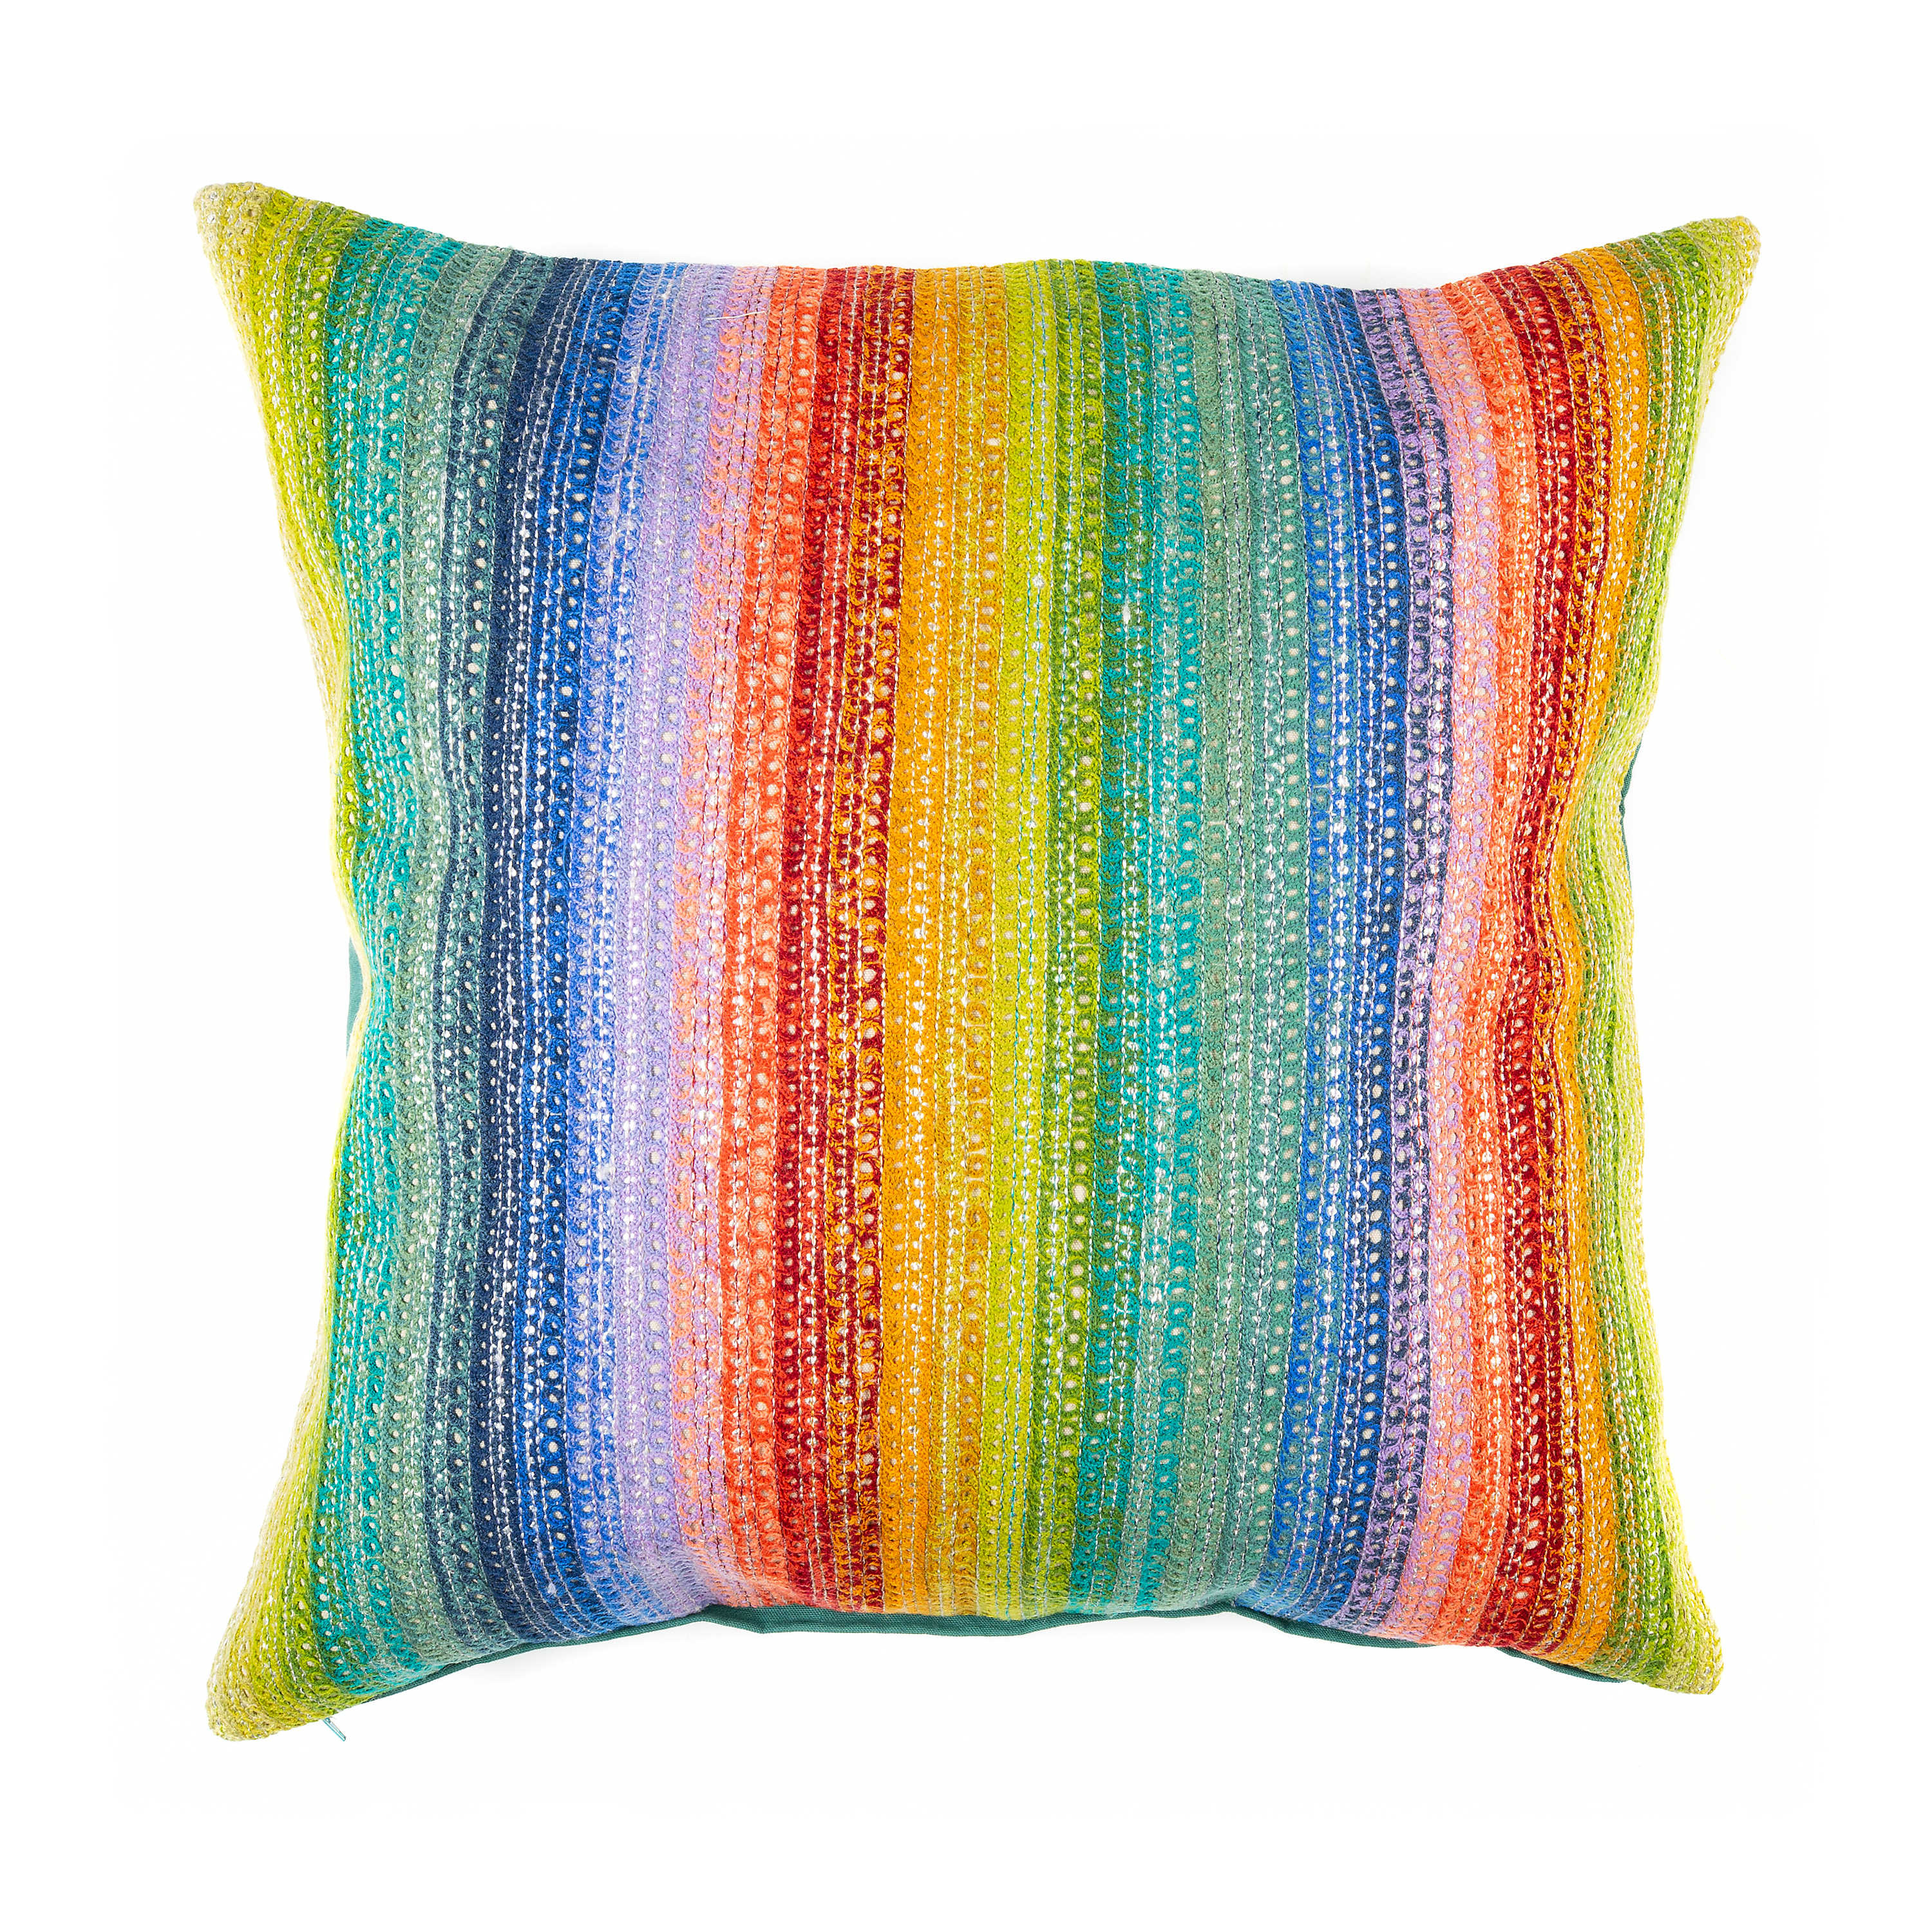 Jaipur Multi Stripe Pillow mackenzie-childs Panama 0